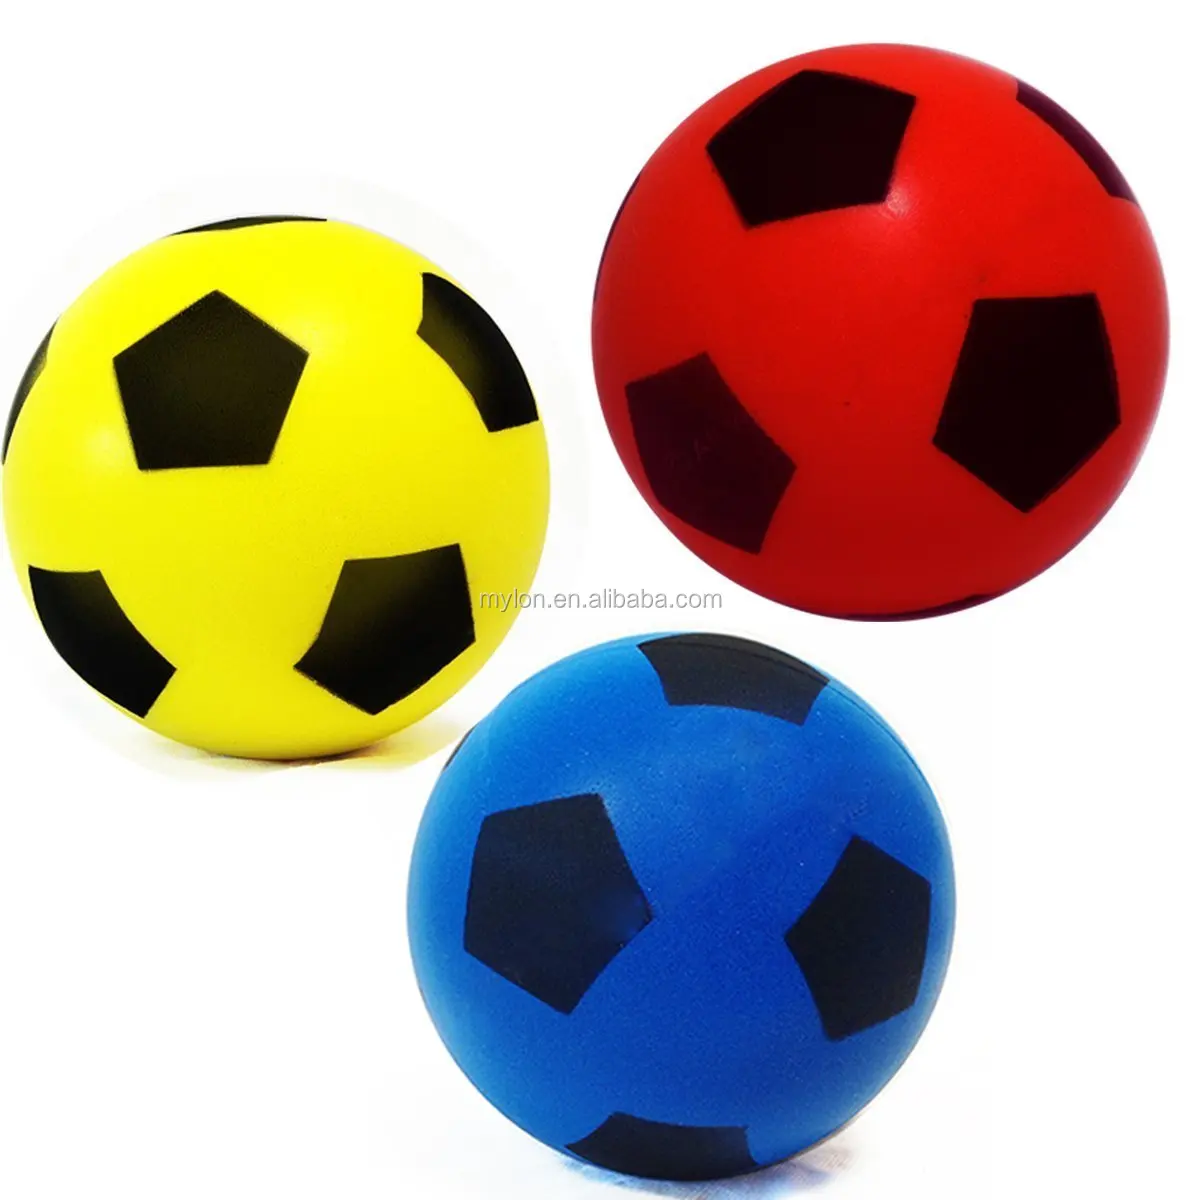 Игры футбольные мячи 3. Мяч PU футбол 7,6см tx31497. Мяч разноцветный. Мячи детские. Цветные мячики для детей.